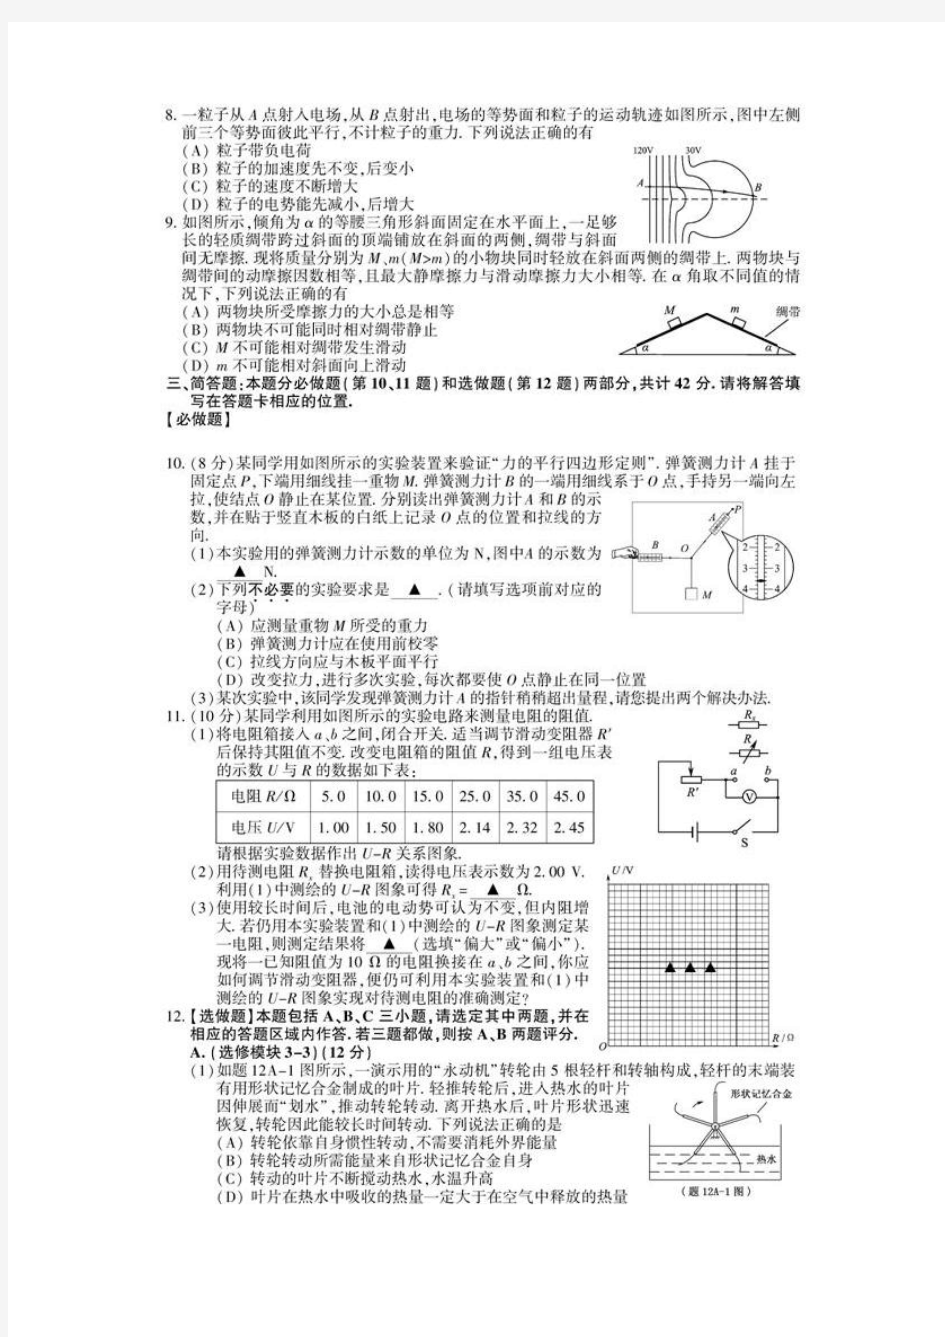 2011江苏高考物理试卷(含参考答案和评分标准)